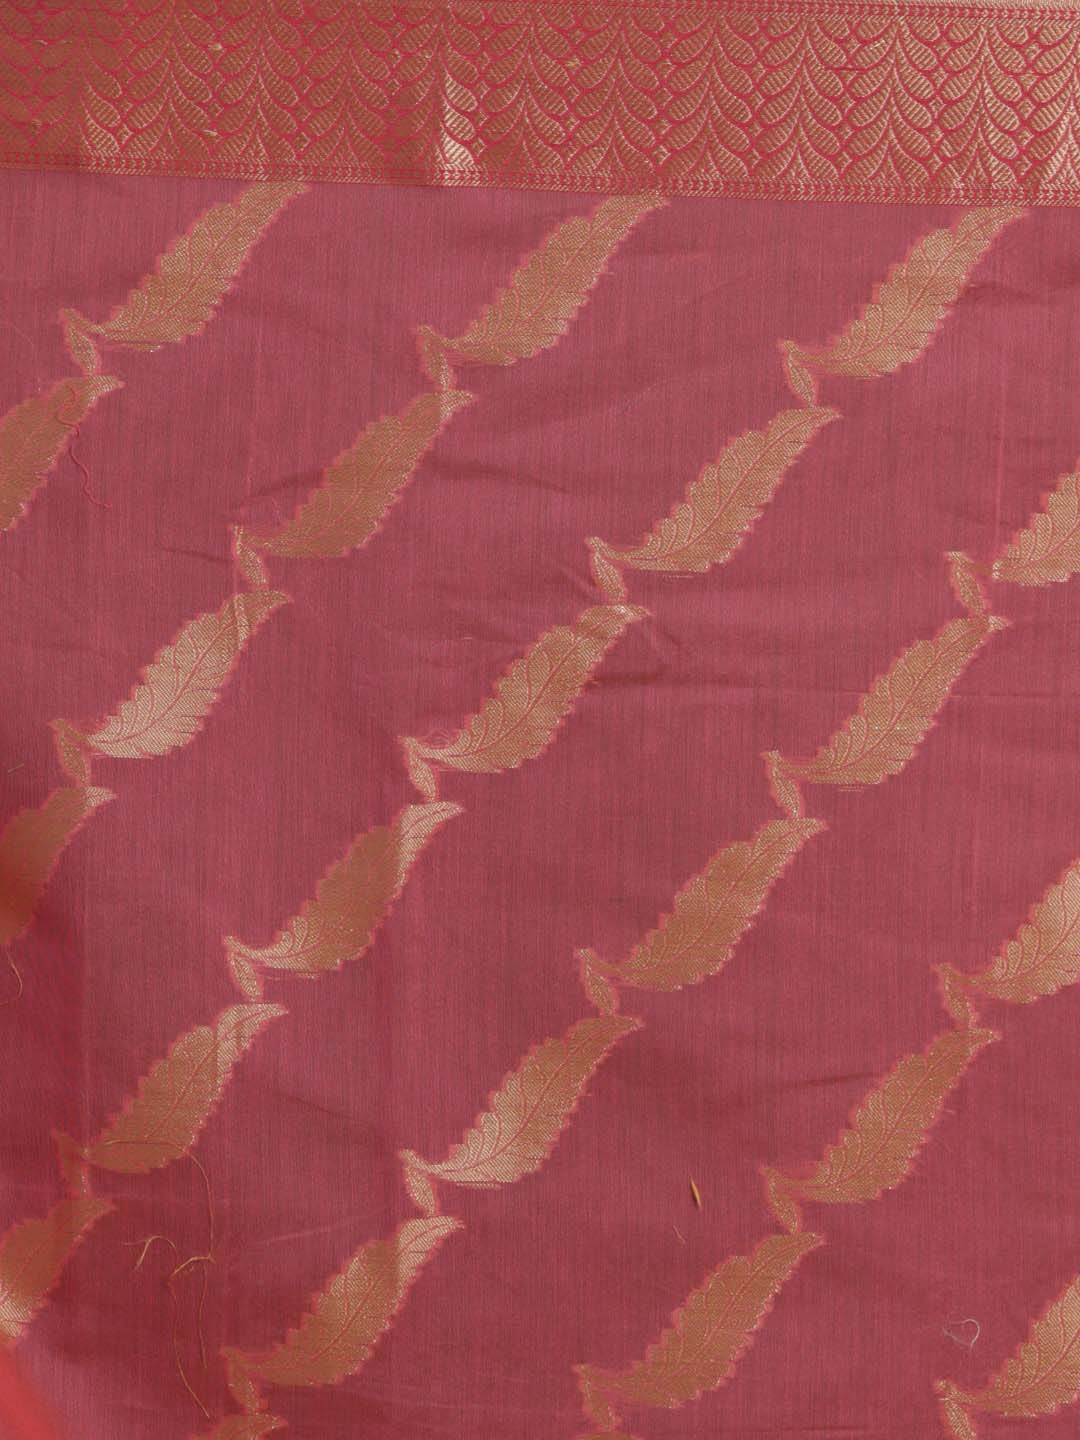 Indethnic Banarasi Pink Woven Design Party Wear Saree - Saree Detail View